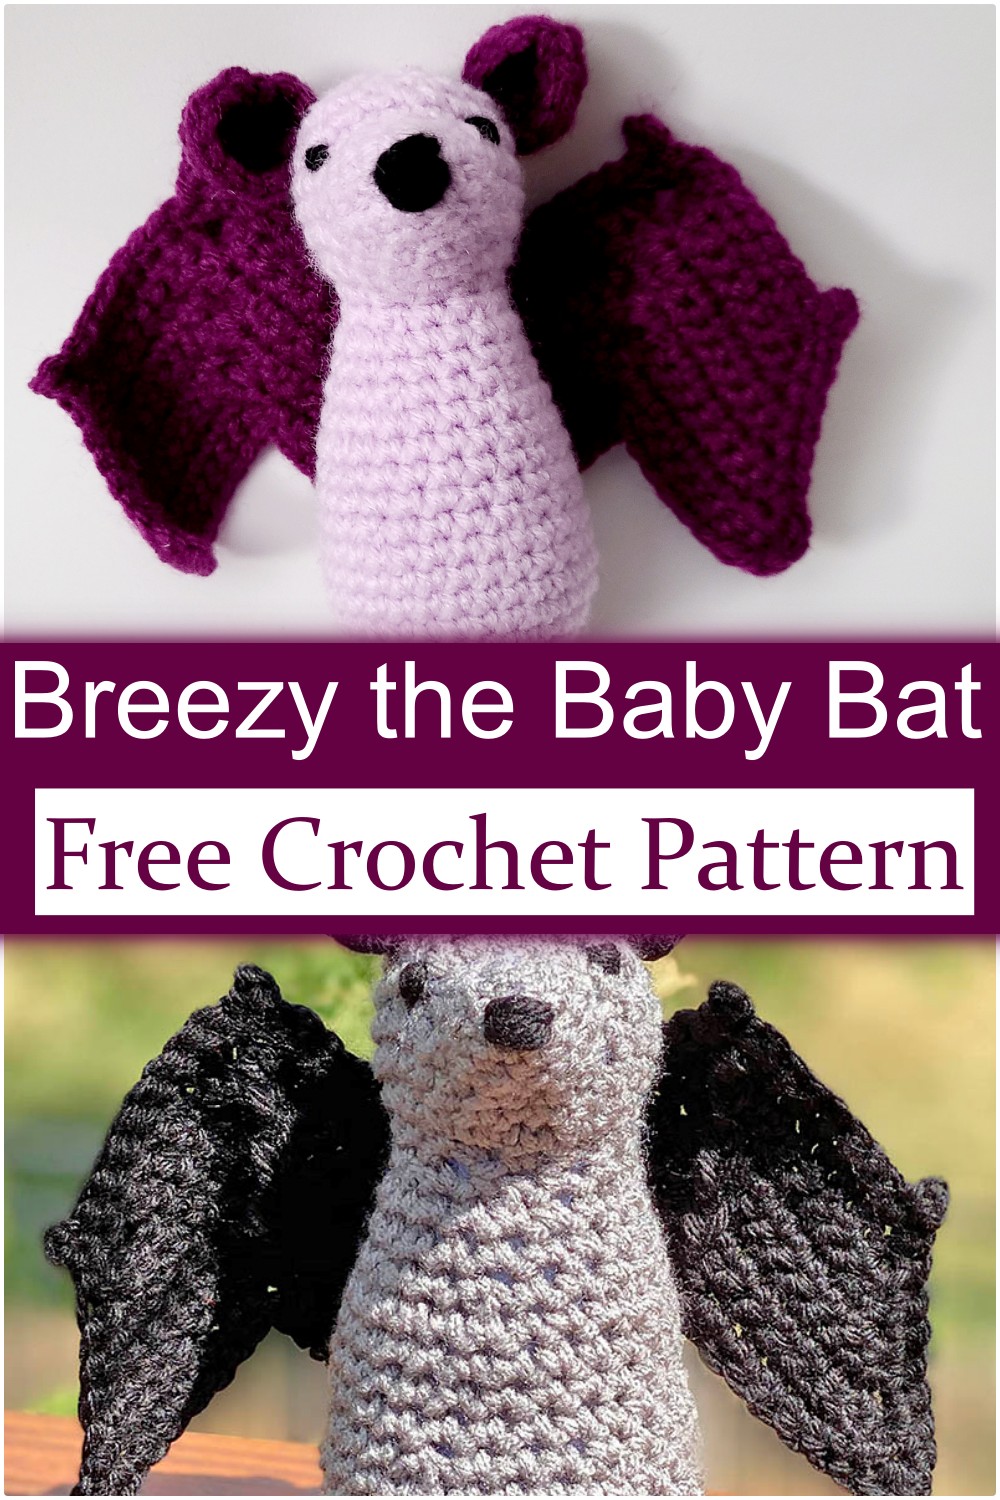 Breezy Crochet Bat Pattern Free